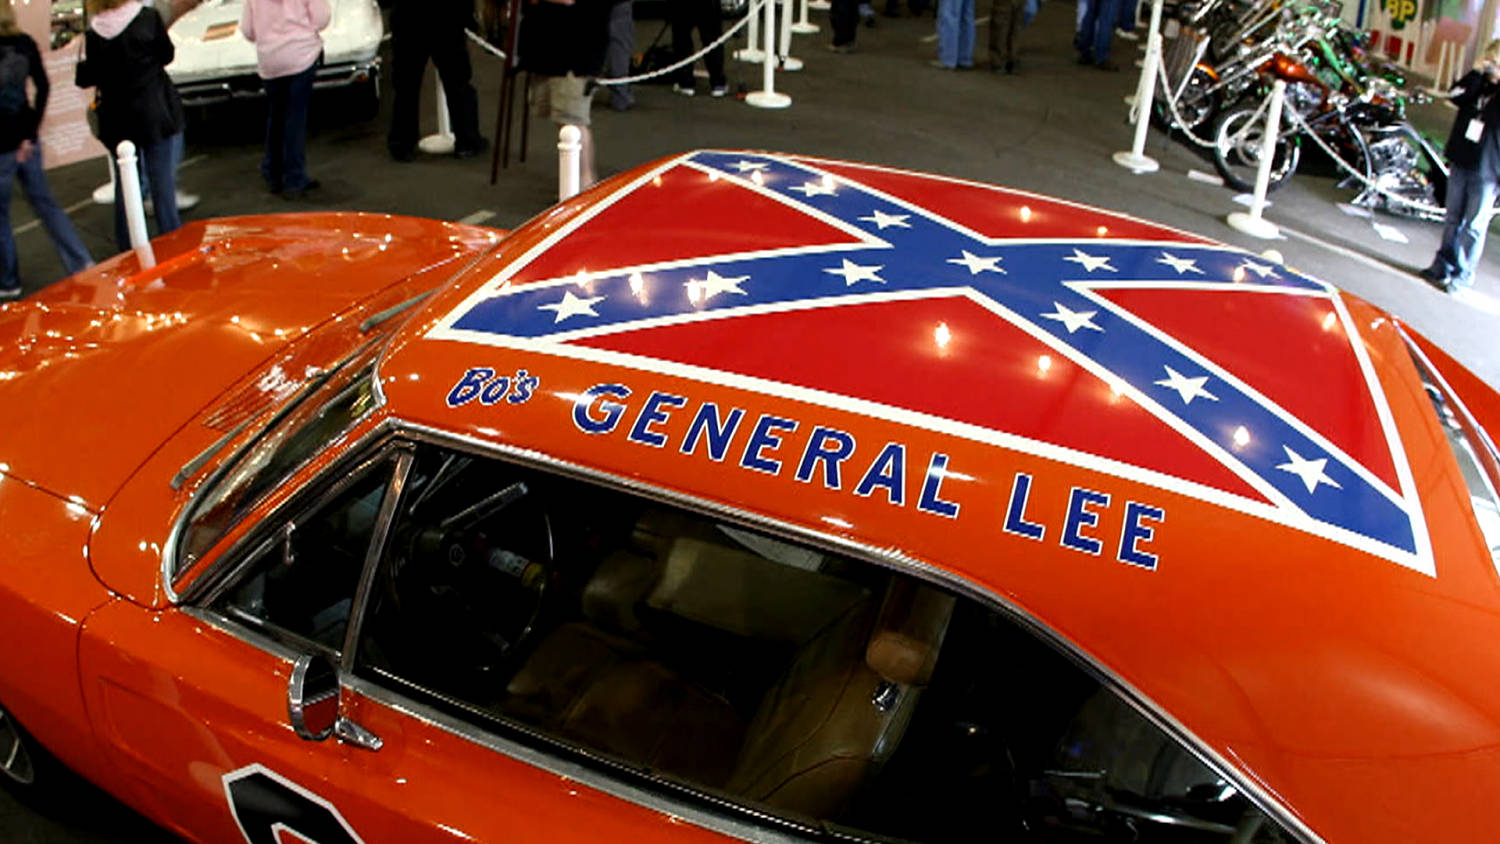 Dukes of Hazzard' reruns end amid Confederate flag controversy